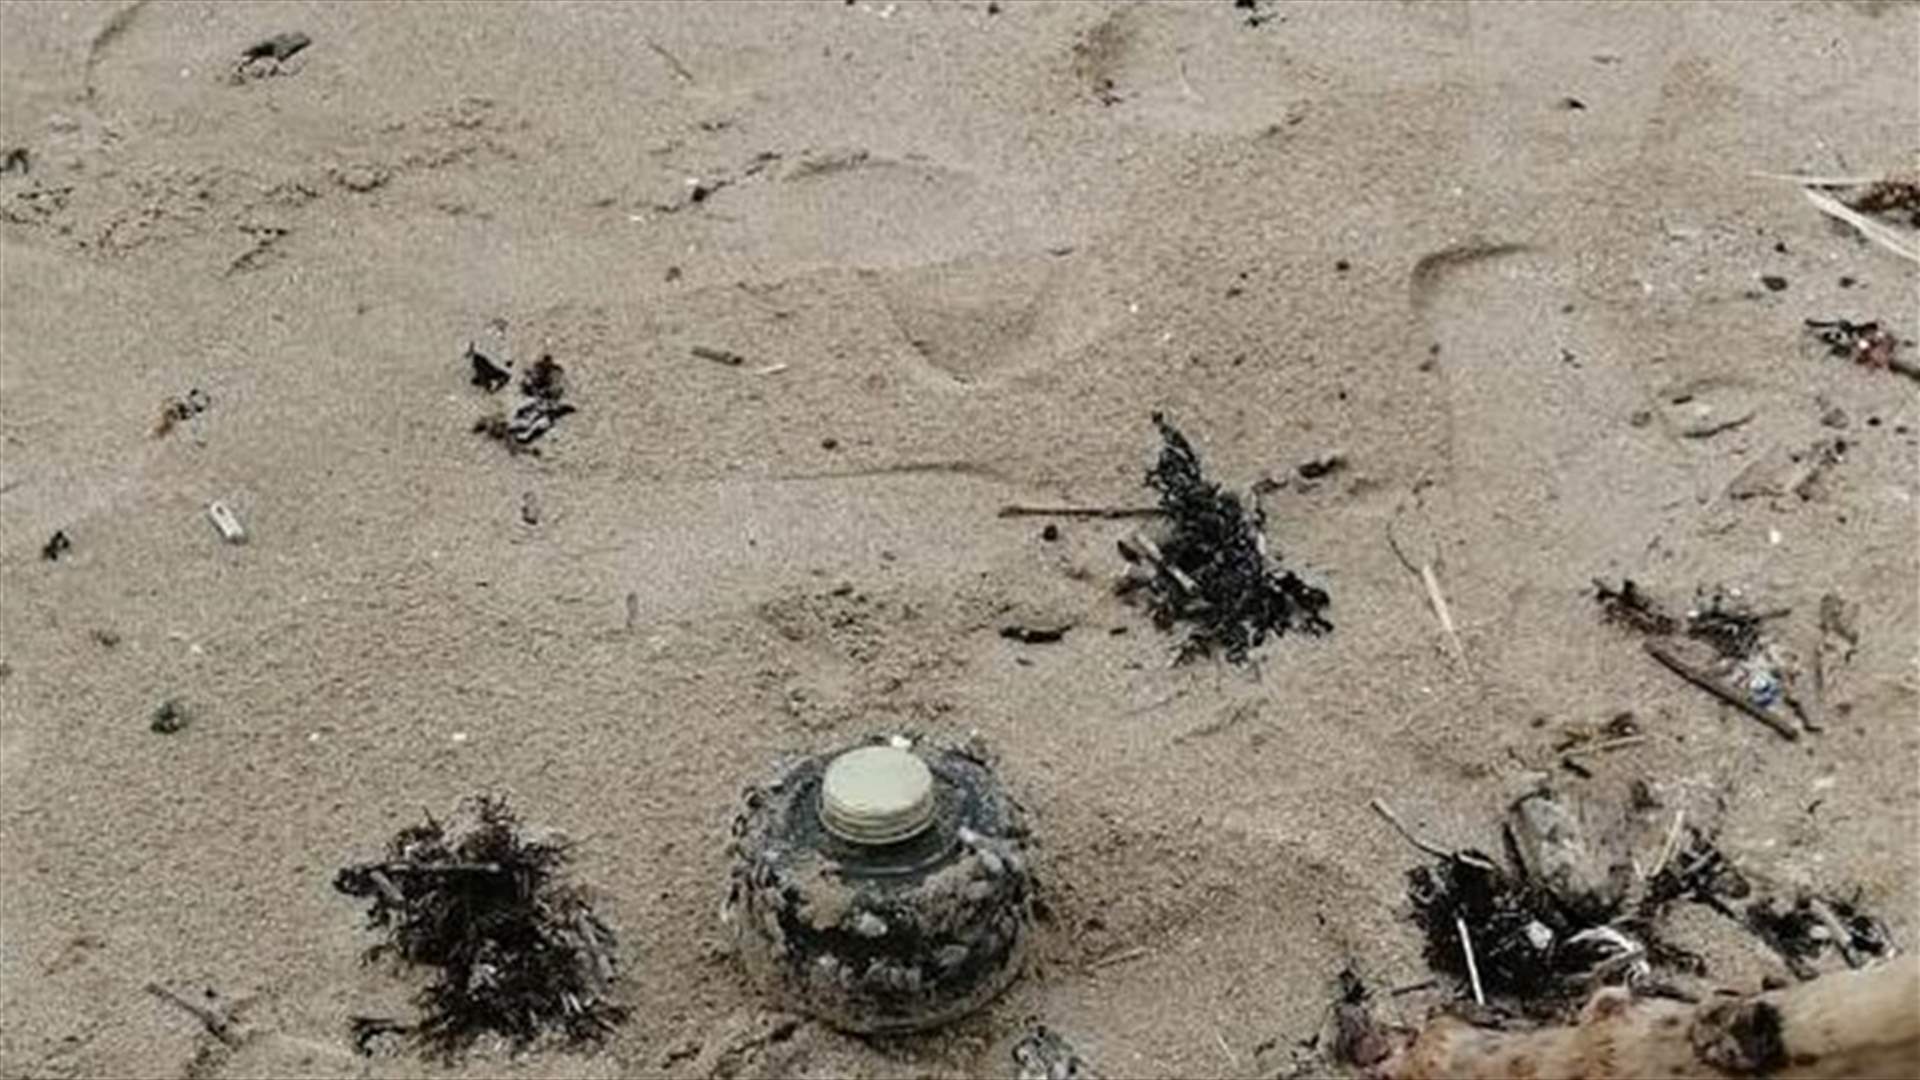 العثور على لغم عند شاطئ الخرايب وتفجيره في مكانه (صورة)